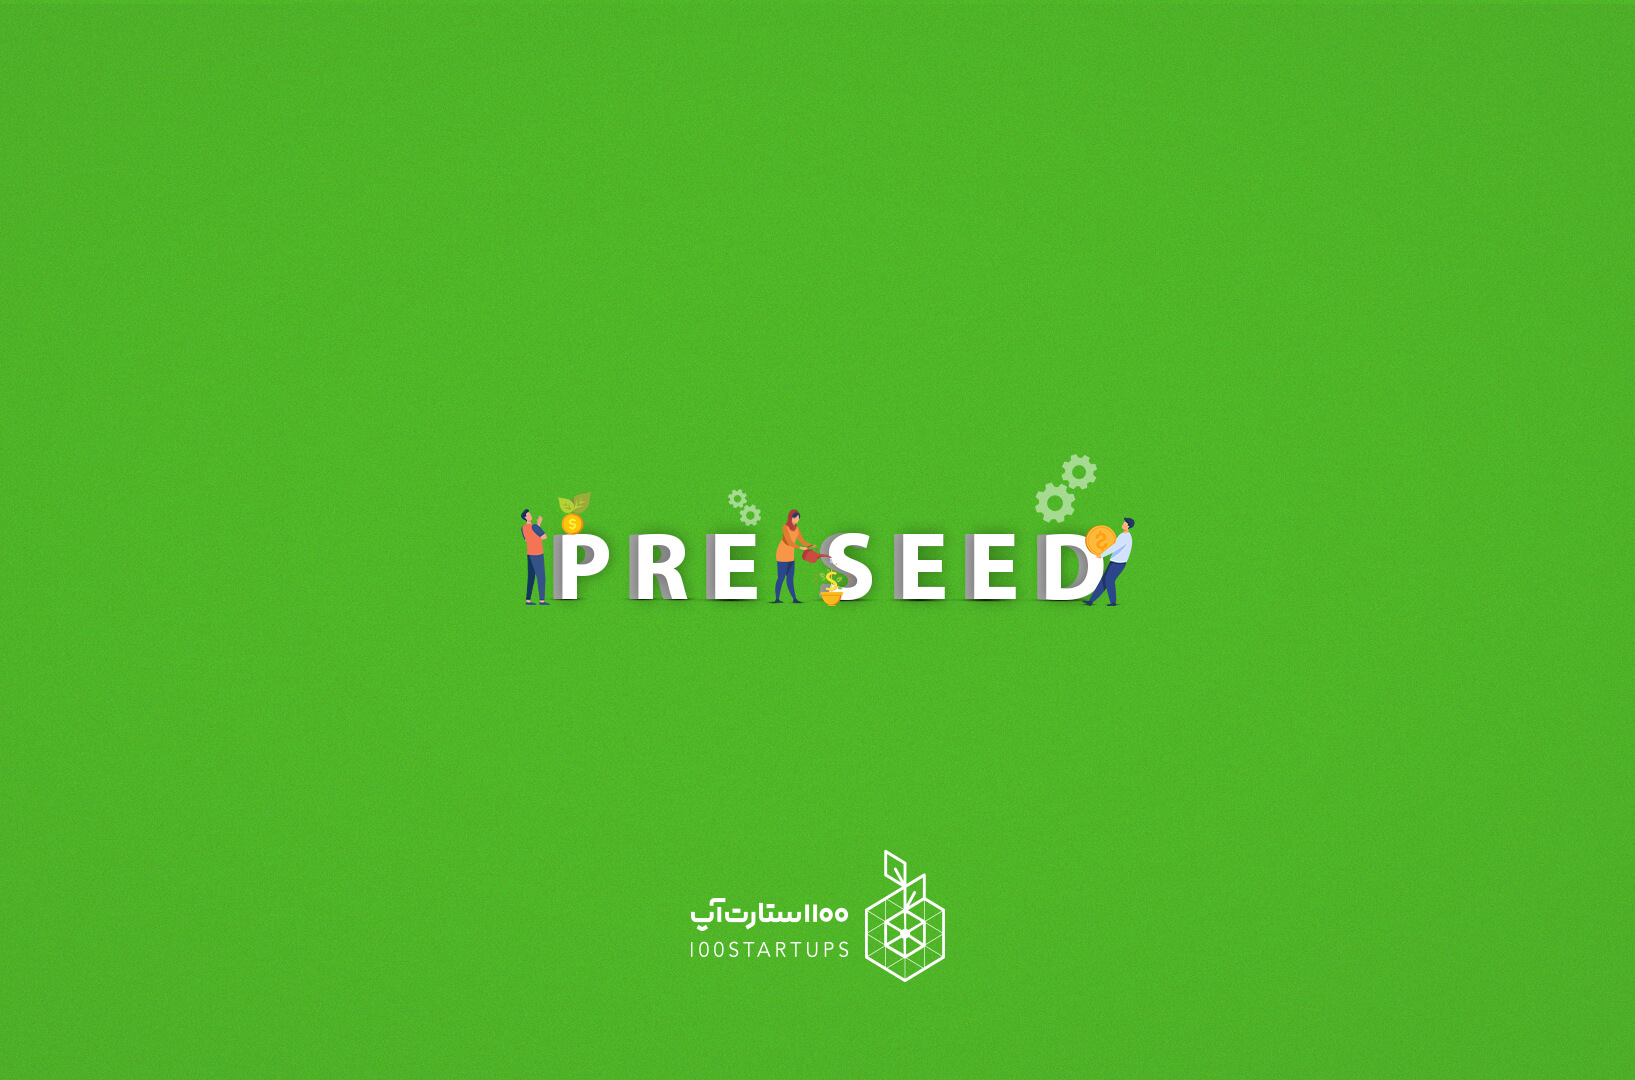 در این مقاله 100استارتاپ میخوانیم مرحله پیش بذری یا pree-seed چیست